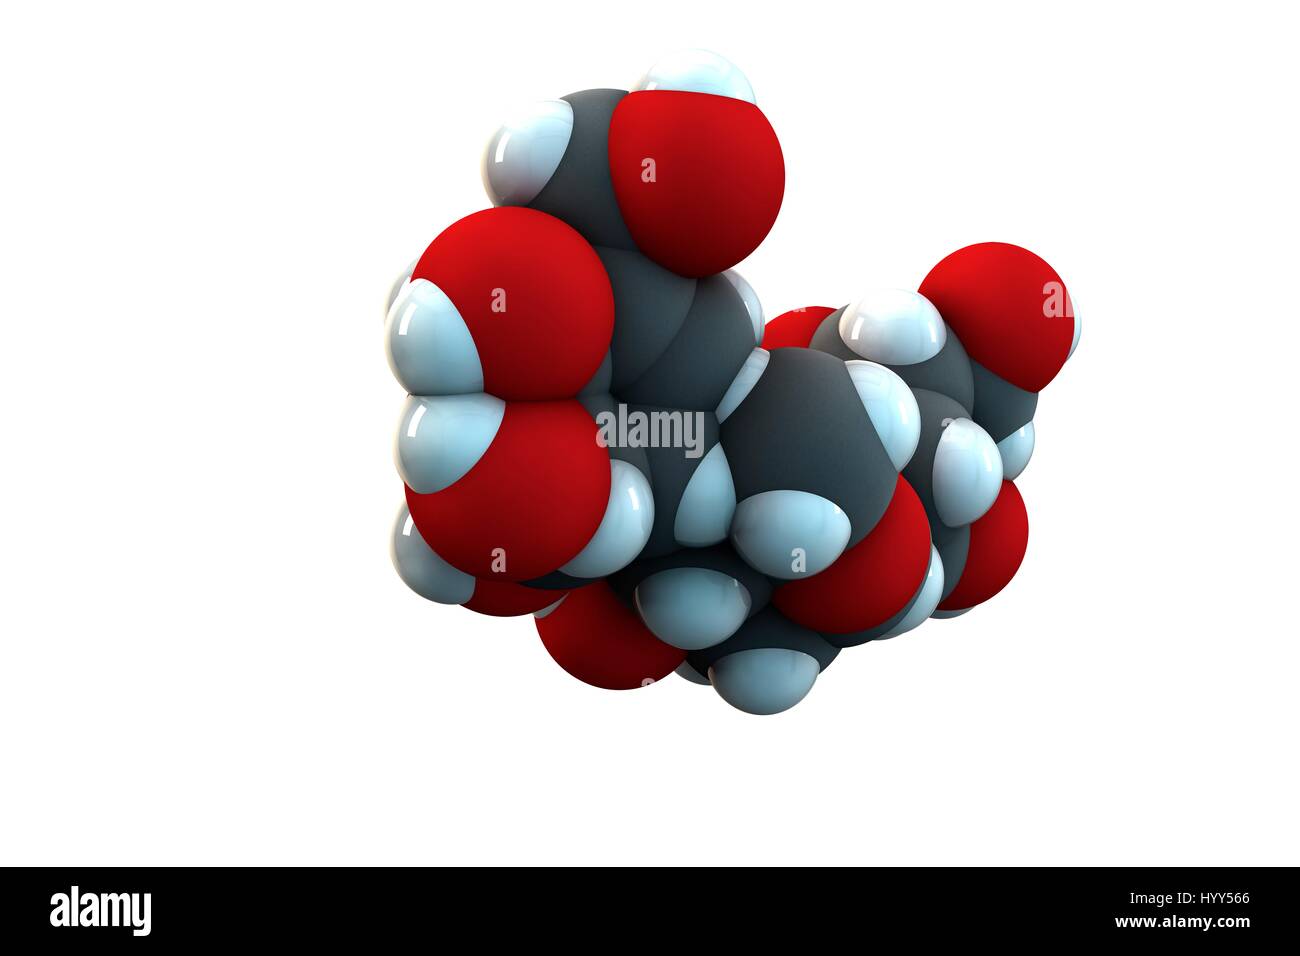 Acarbose diabete molecola di farmaco. Formula chimica è C25H43N18. Gli atomi sono rappresentati come sfere: carbonio (grigio), Idrogeno (bianco), Azoto (blu), Ossigeno (rosso). Illustrazione. Foto Stock